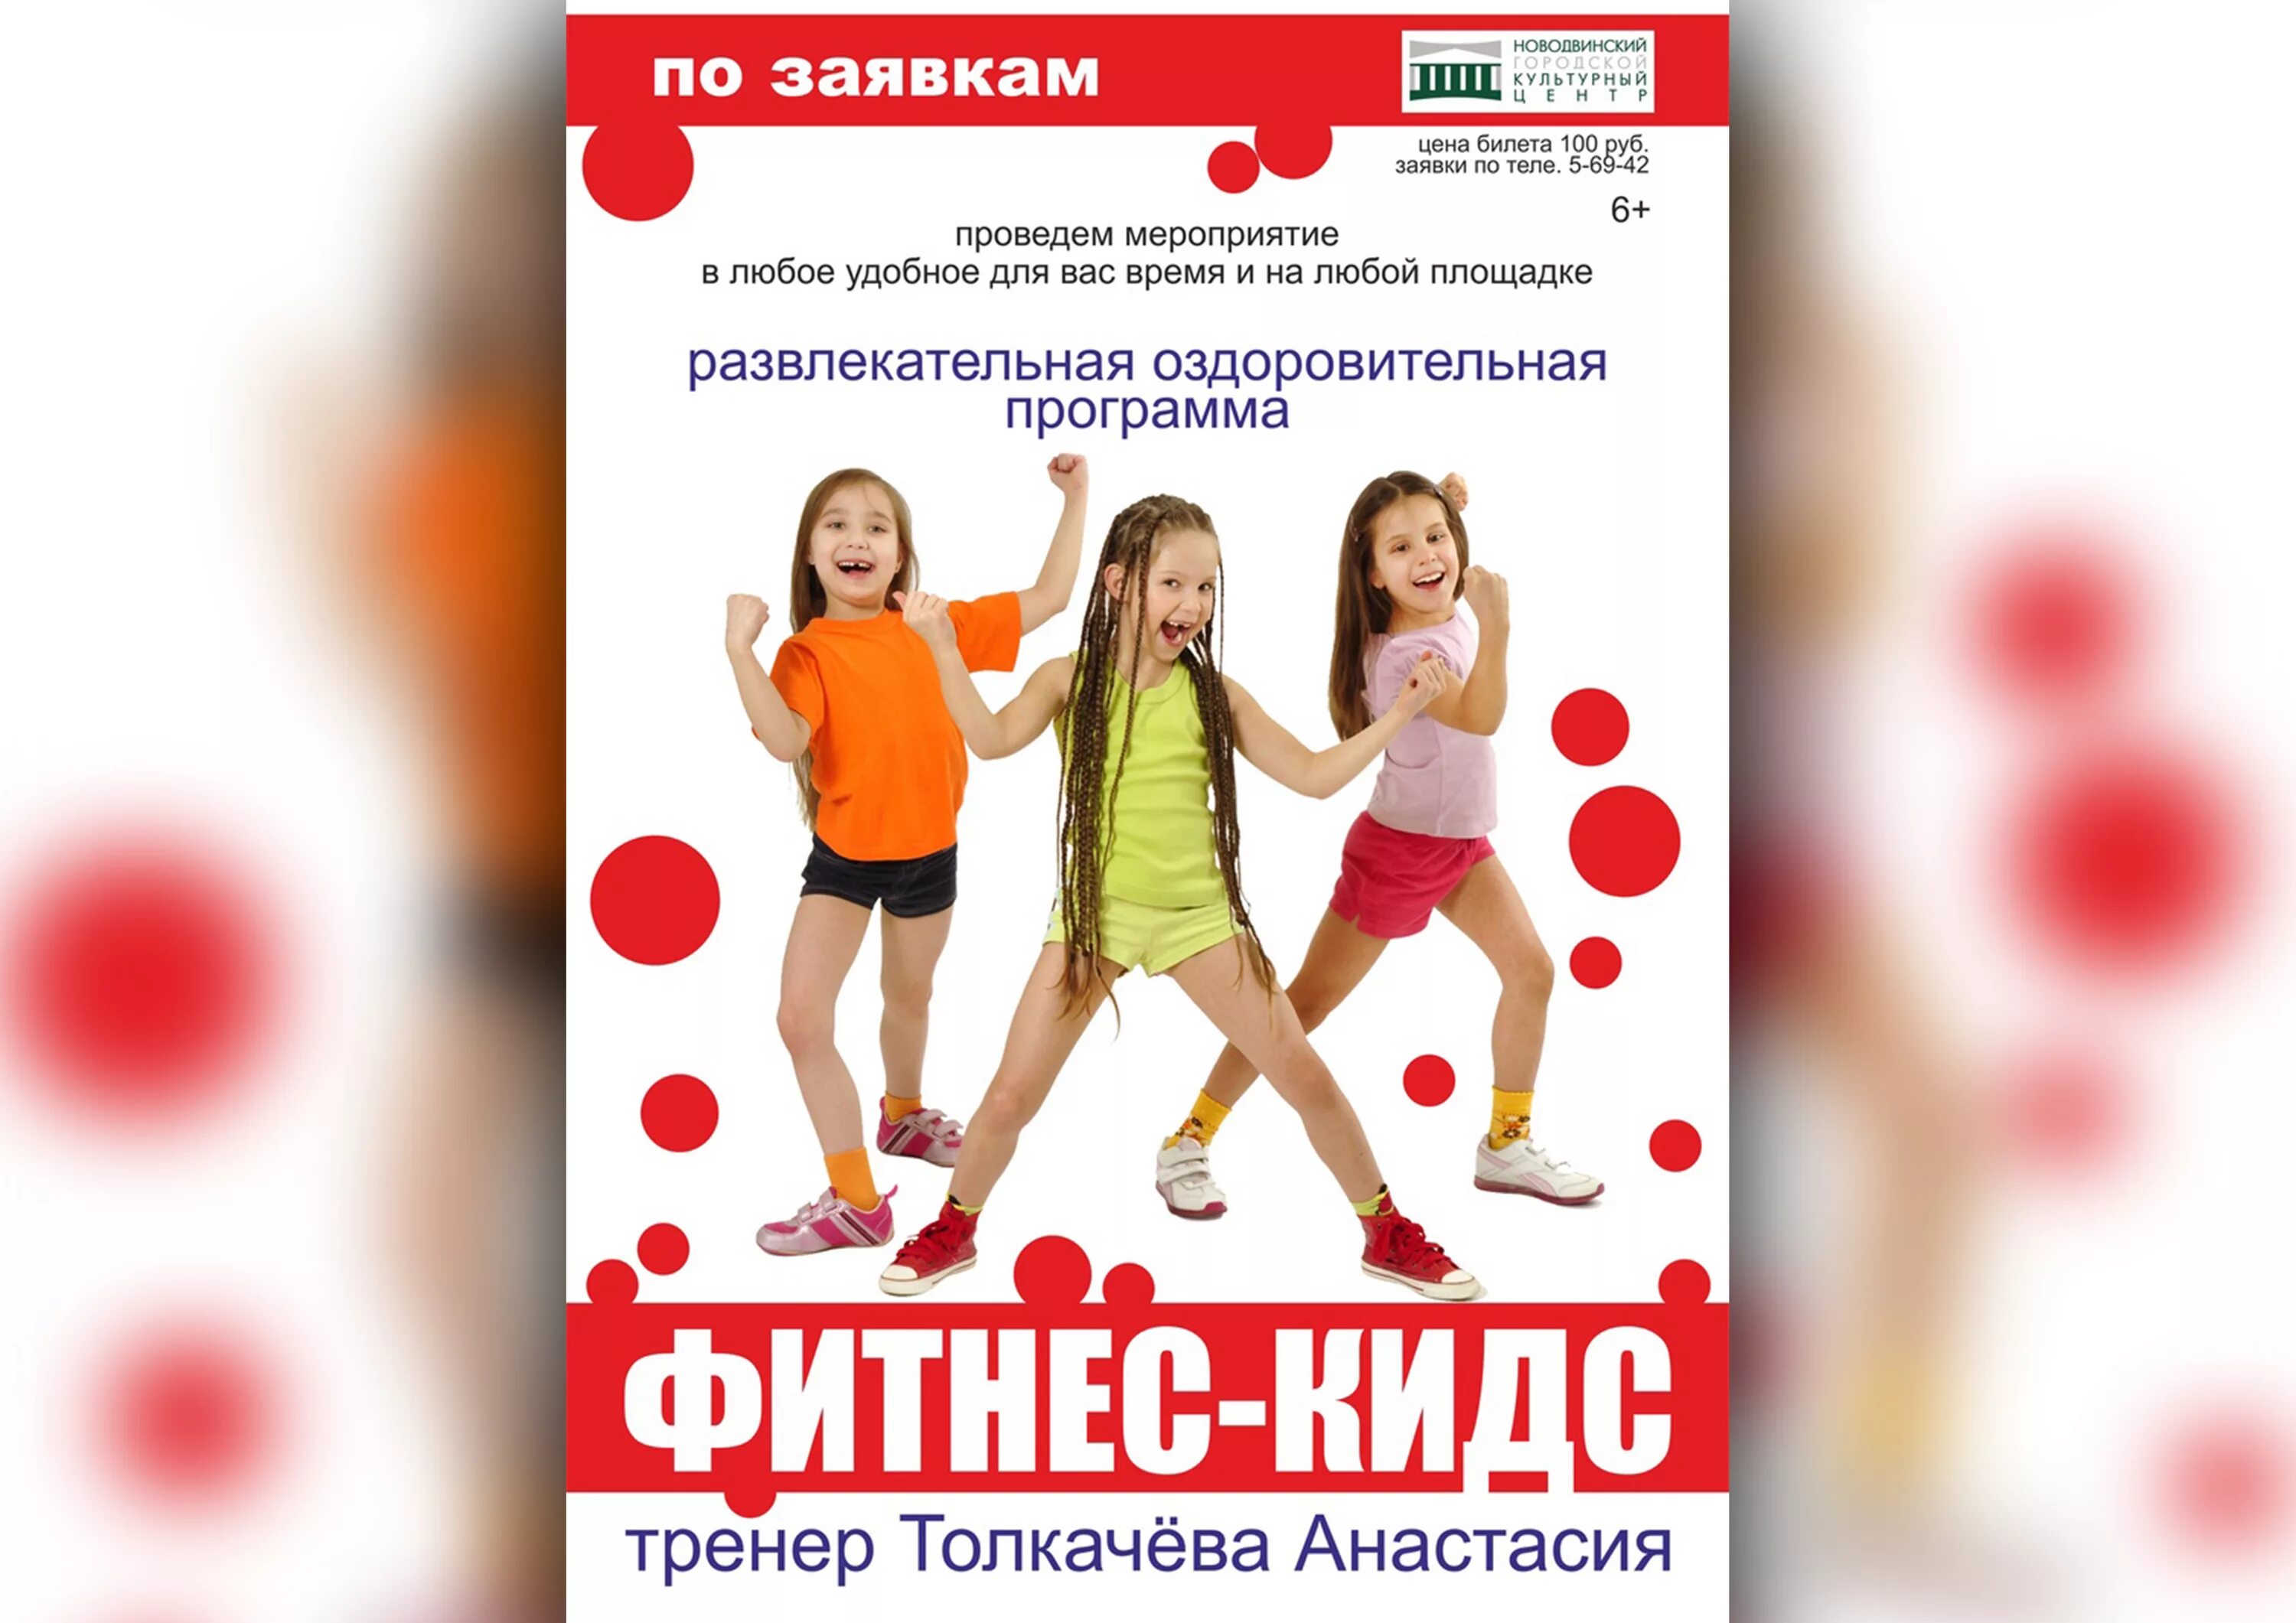 Детский фитнес. Фитнес для детей реклама. Название детского фитнеса. Объявление фитнес для детей. Российские программы для детей